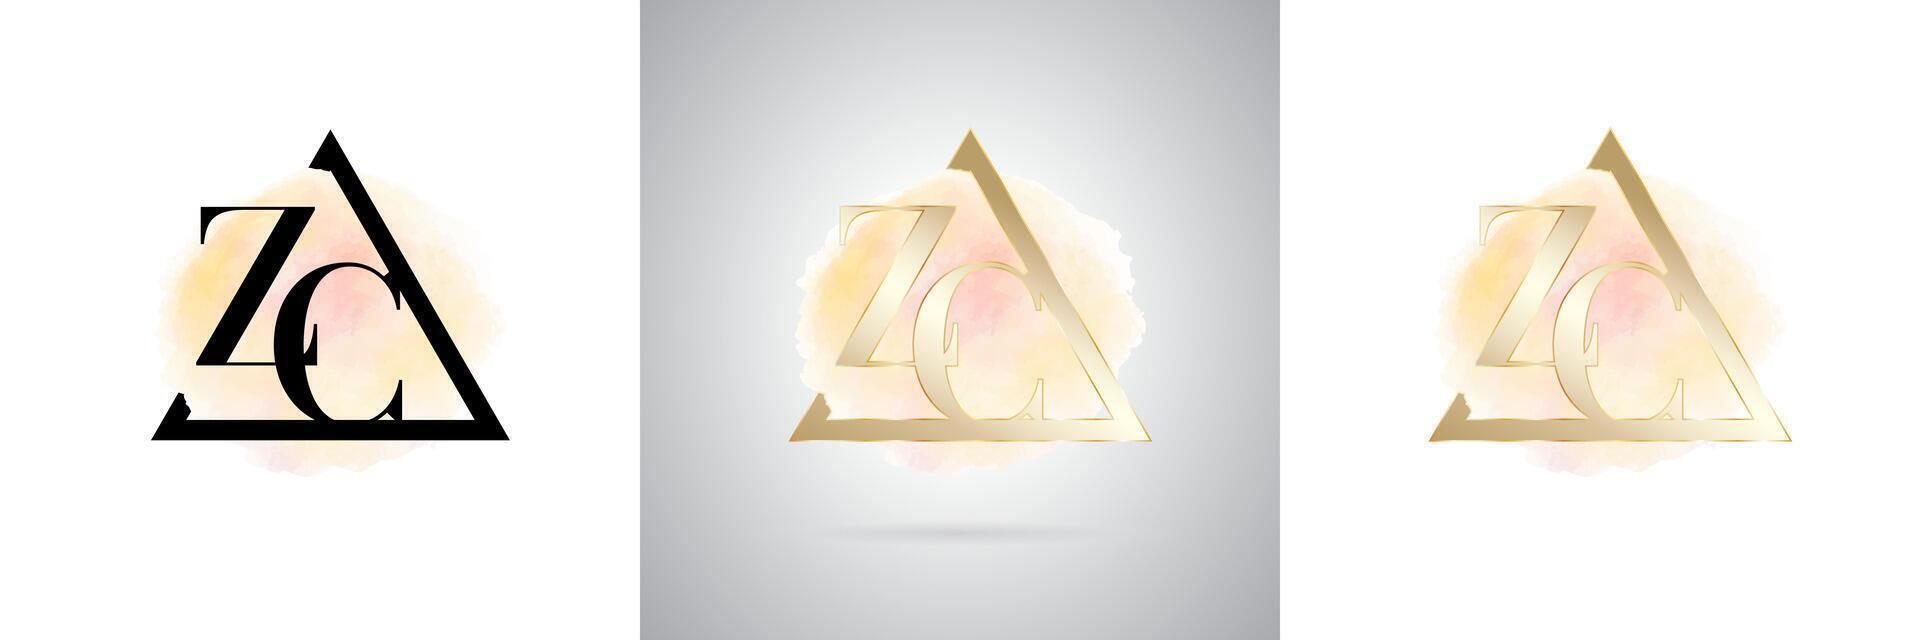 ZC Letter Initial Brand Logo Design vector